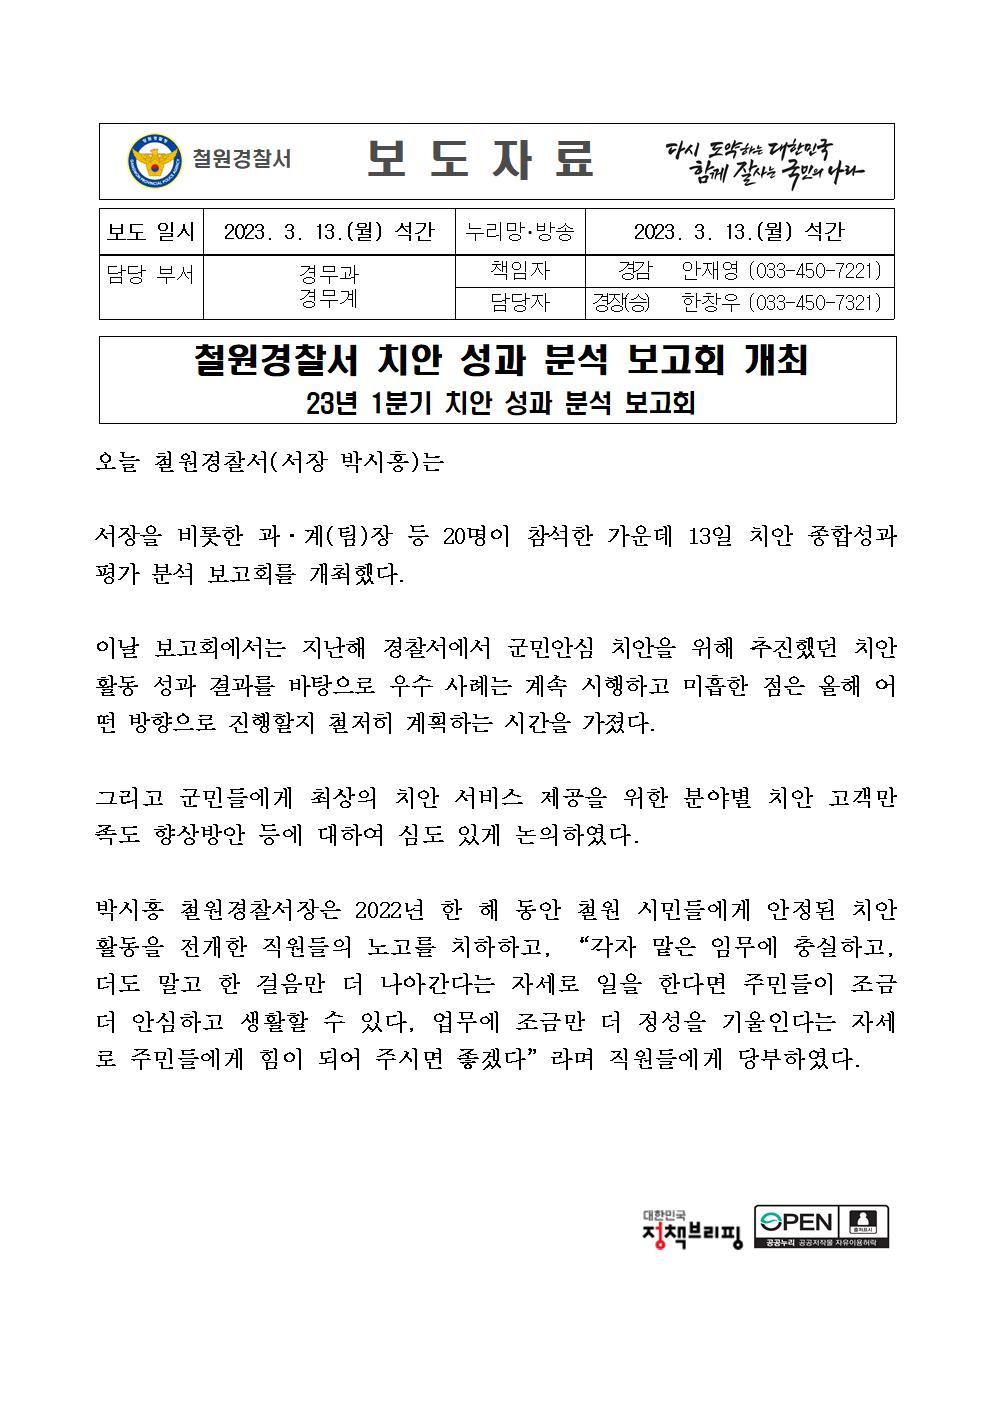 23.3.13. 철원경찰서 치안종합평가-23.3.13 철원경찰서 치안종합평가